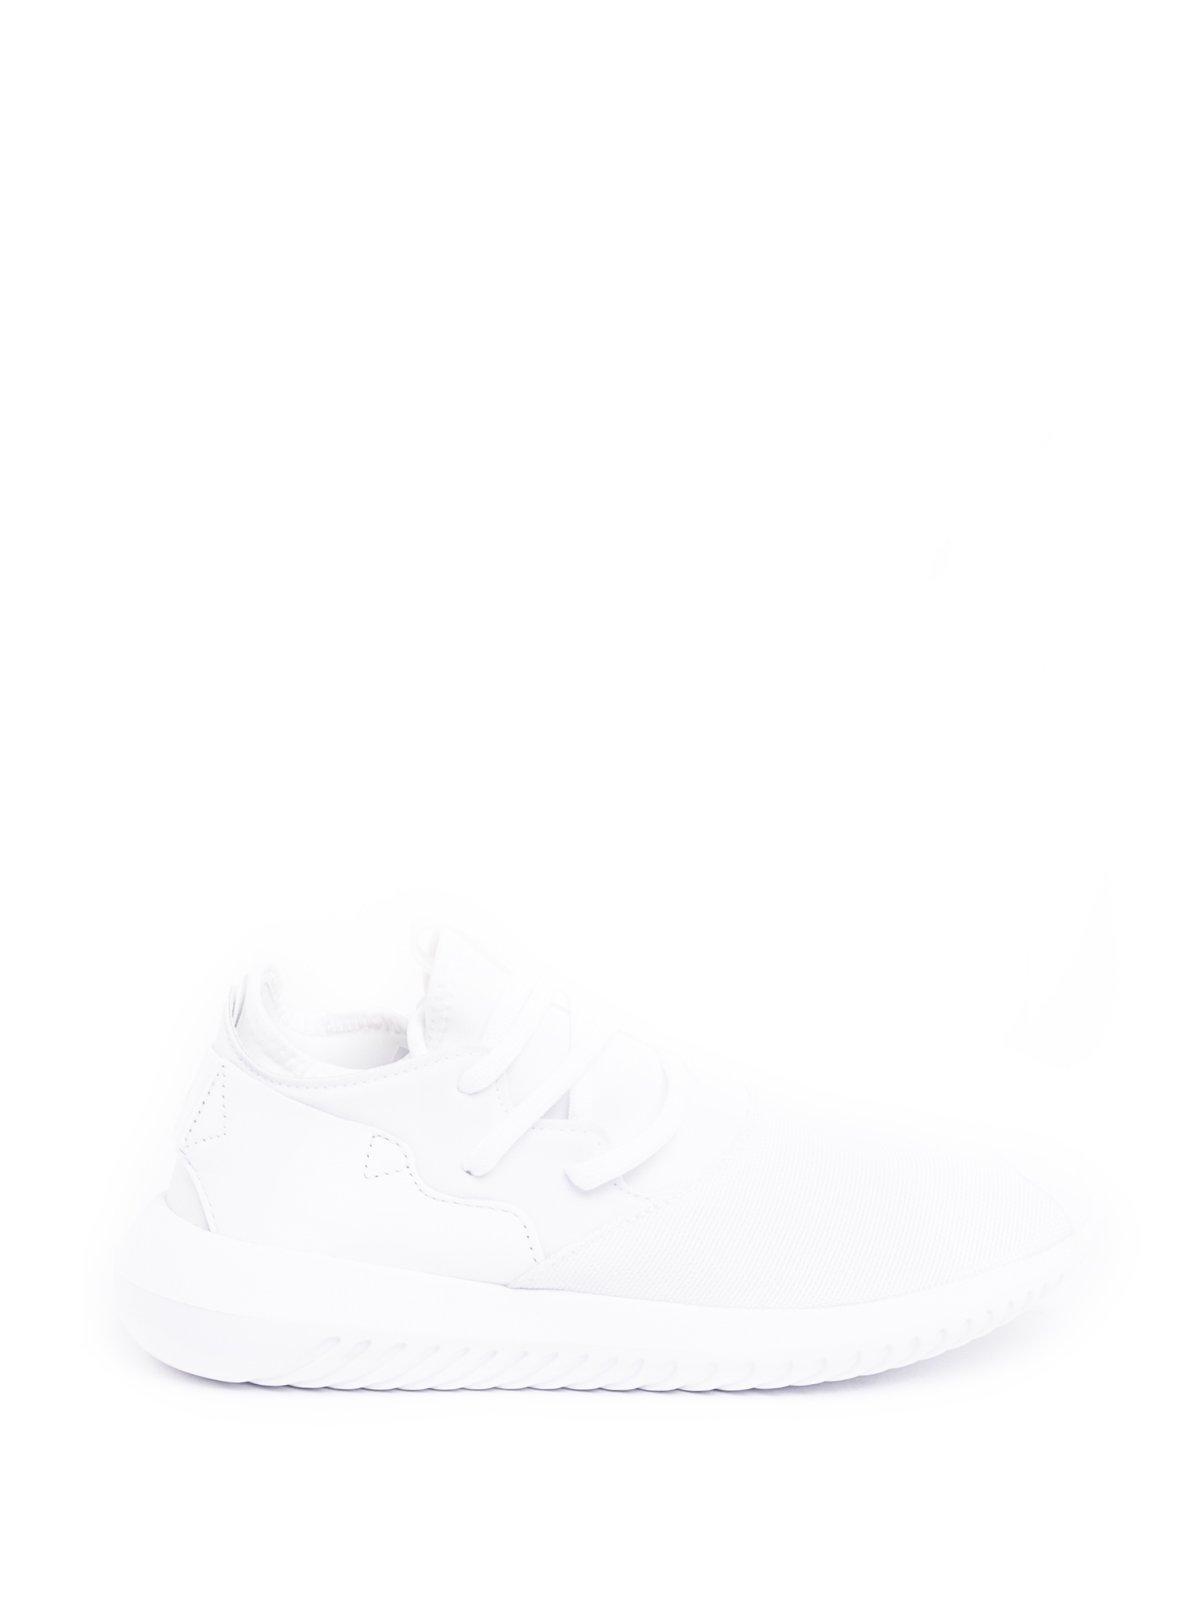 knoglebrud Inspicere Massakre Shop Adidas Originals Tubular Entrap Sneakers In White